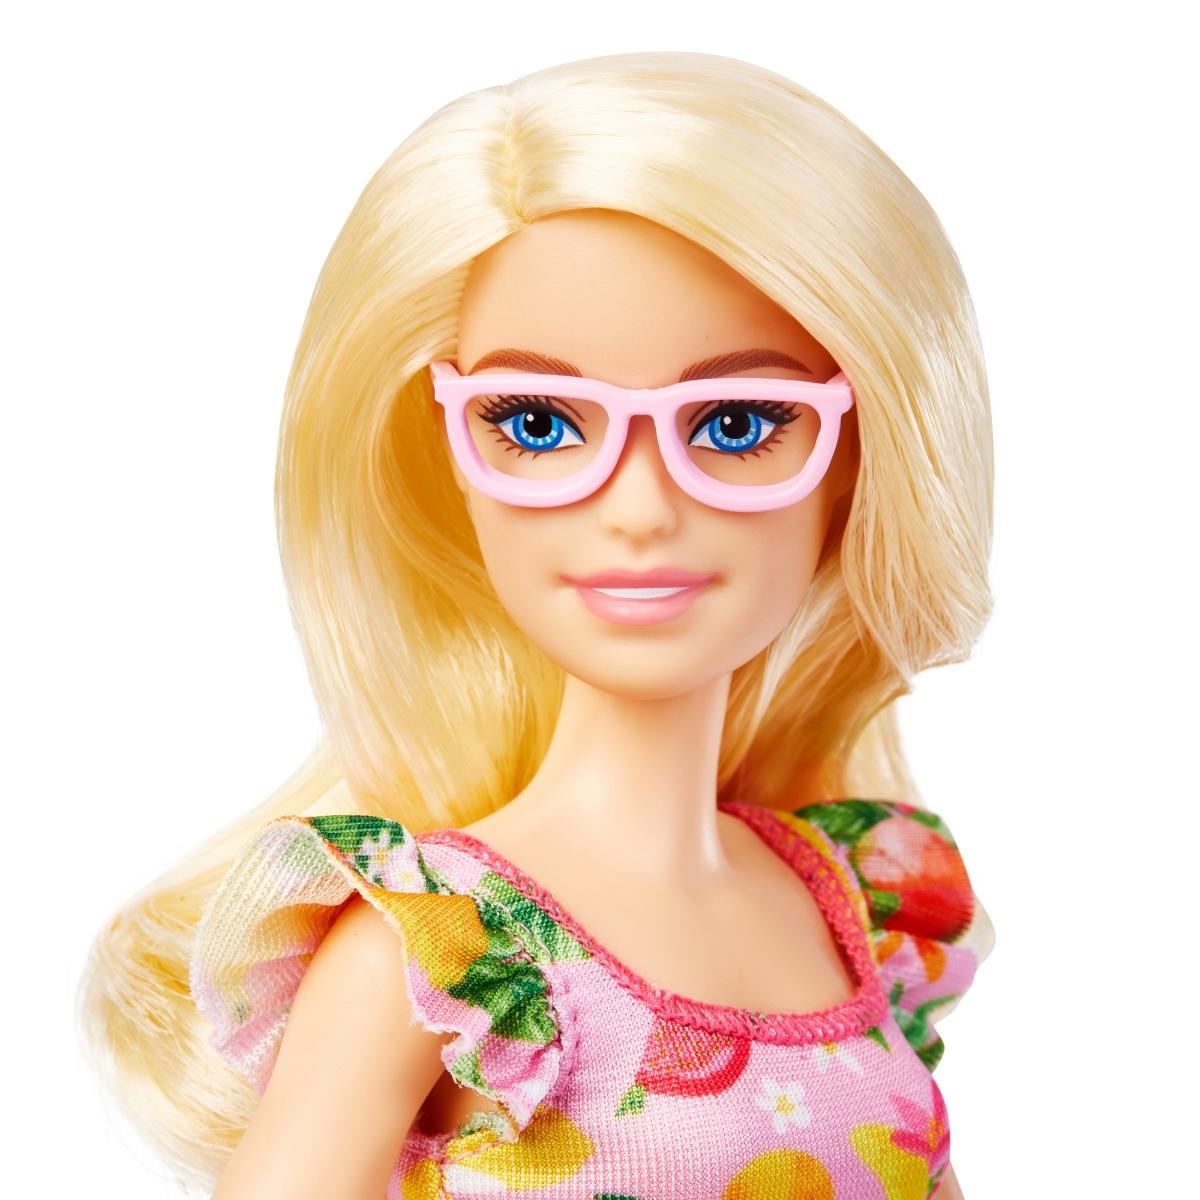 Achat Promotion Barbie - Mattel Poupée Aime les Océans - GRB36 - Barbie